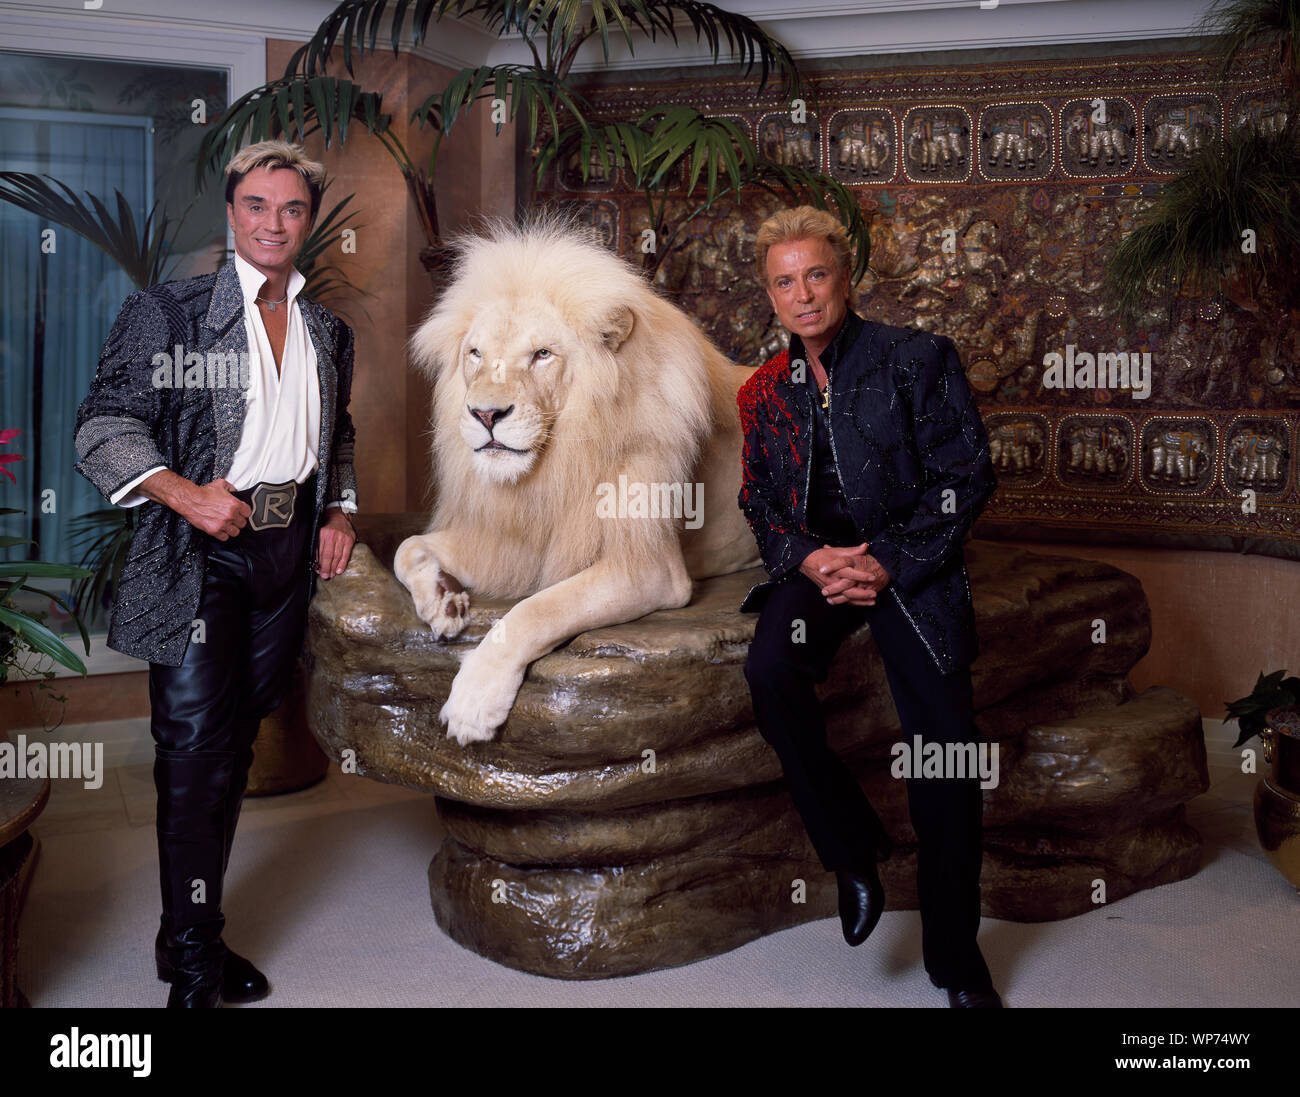 Las Vegas illusionisten Siegfried & Roy (rechts) und einem großen Katzen  Freund, in ihrem Mirage Hotel und Resort Apartment, vor Roy's Karriere -  Lähmendes Übel zurichten von einem weißen Tiger während eines